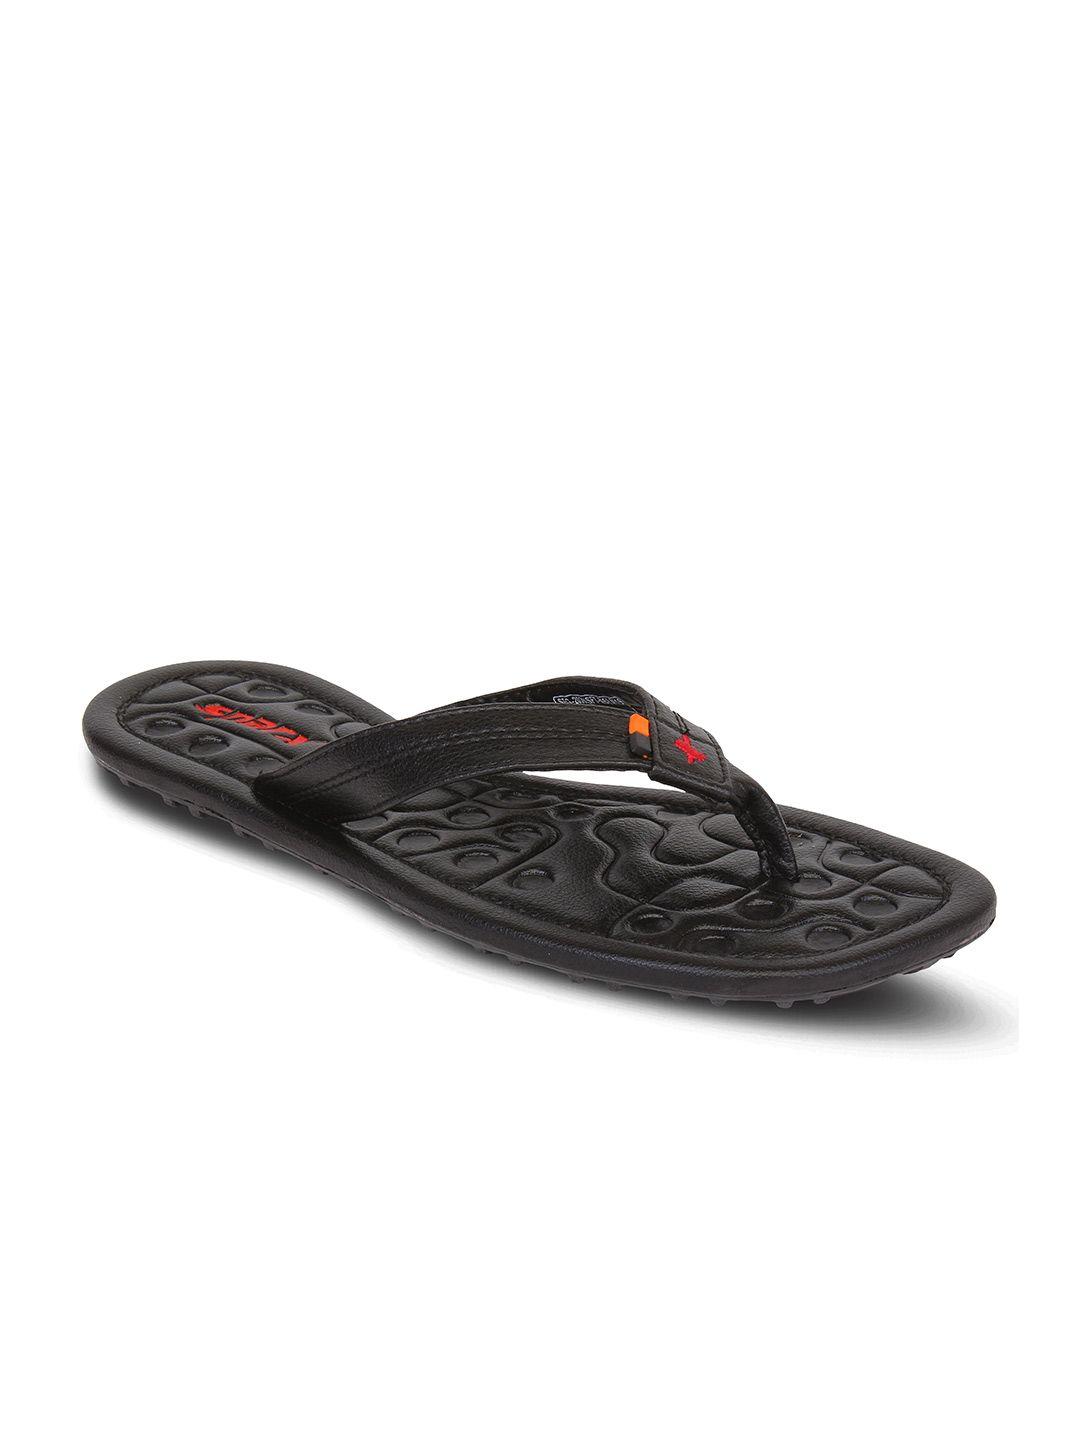 sparx men black & red rubber thong flip-flops